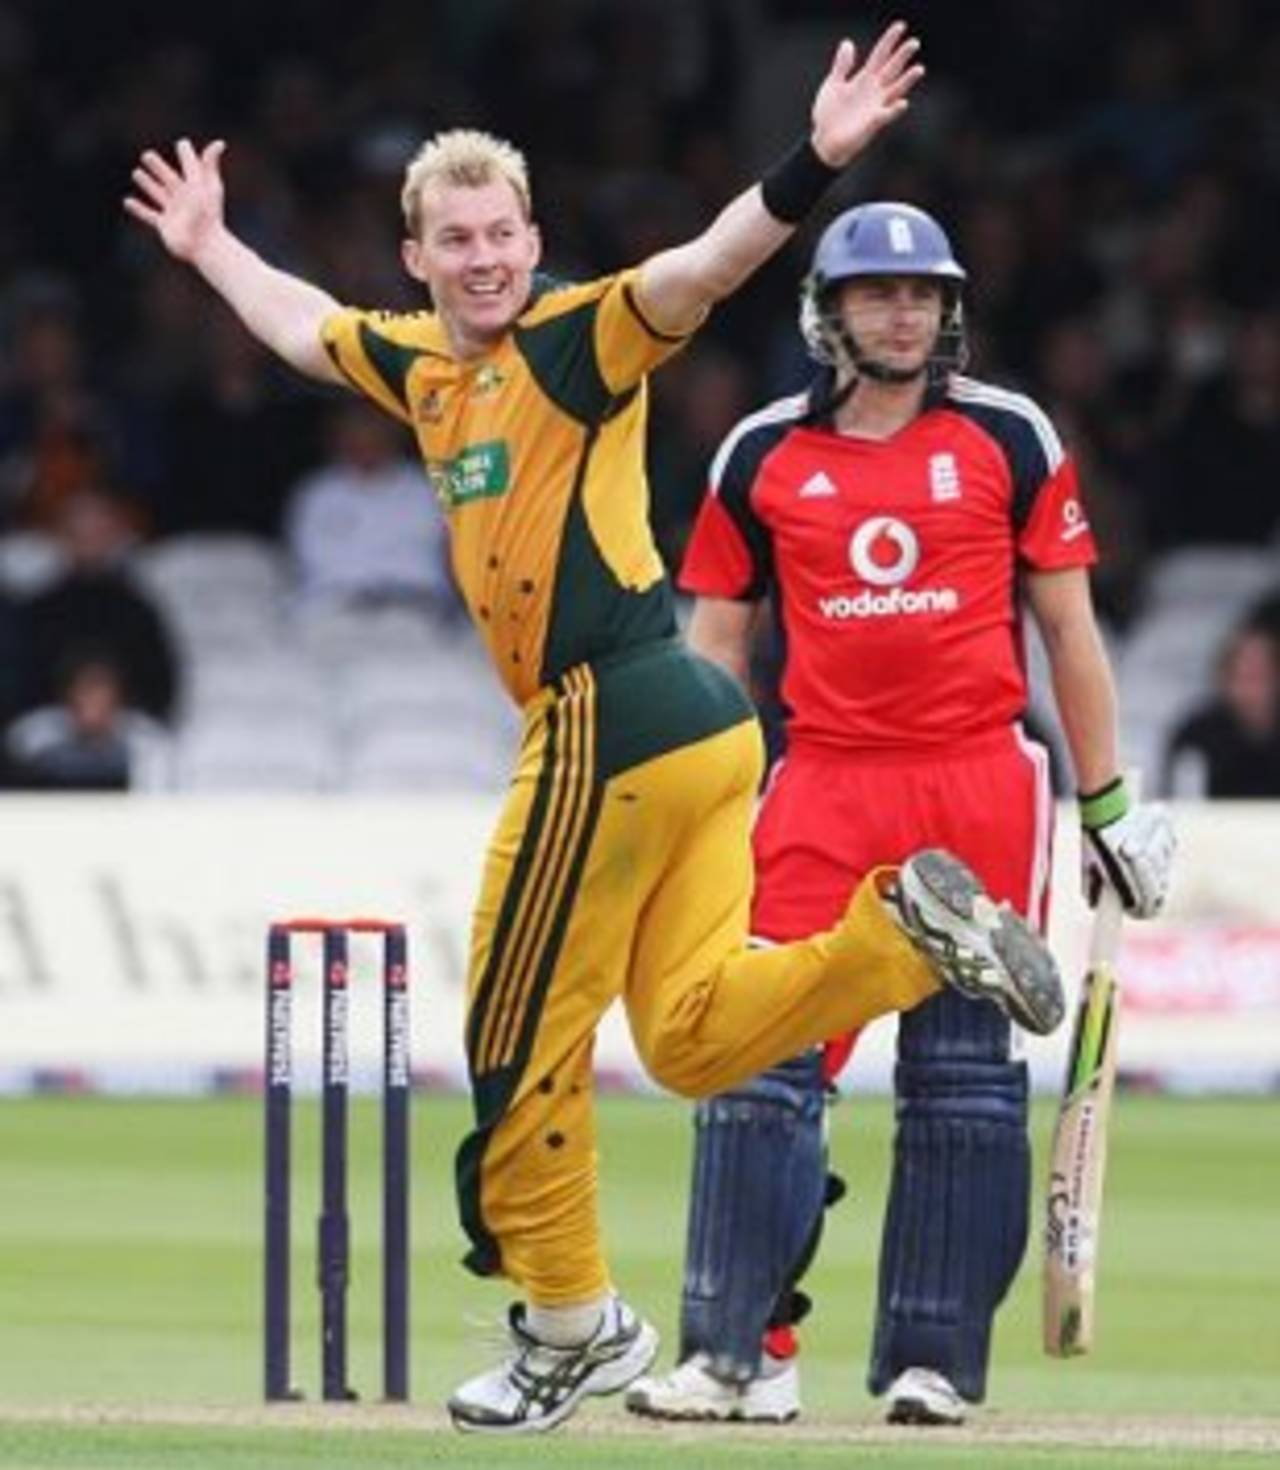 Brett Lee had Luke Wright caught behind, England v Australia, 2nd ODI, Lord's, September 6, 2009